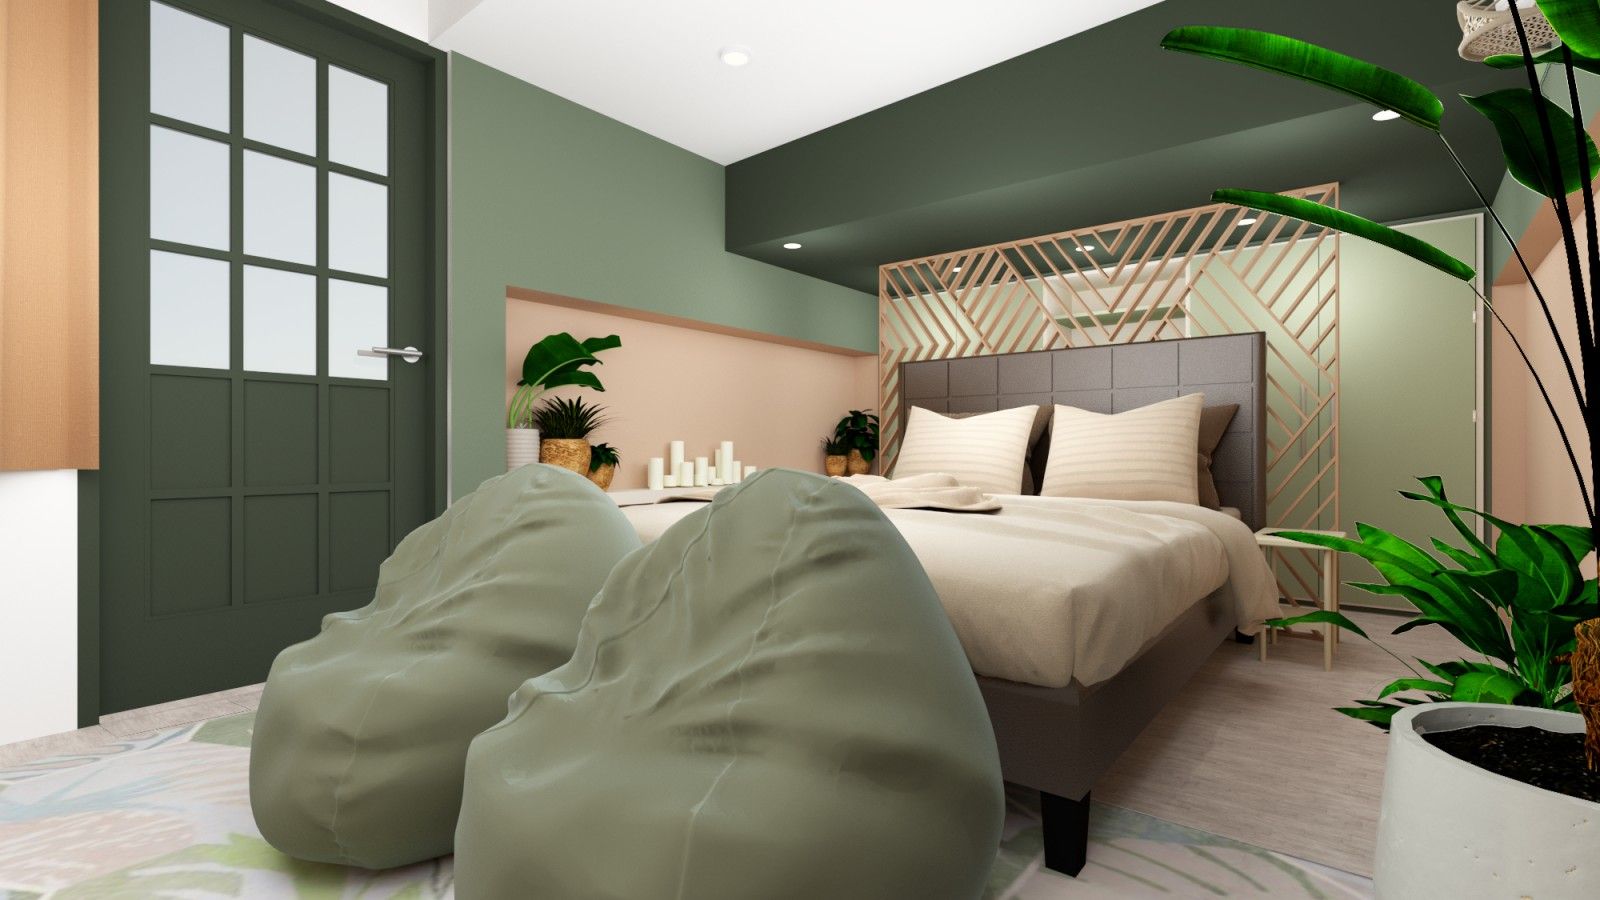 RM Bedroom Project, Quadraforma Construction Quadraforma Construction 小臥室